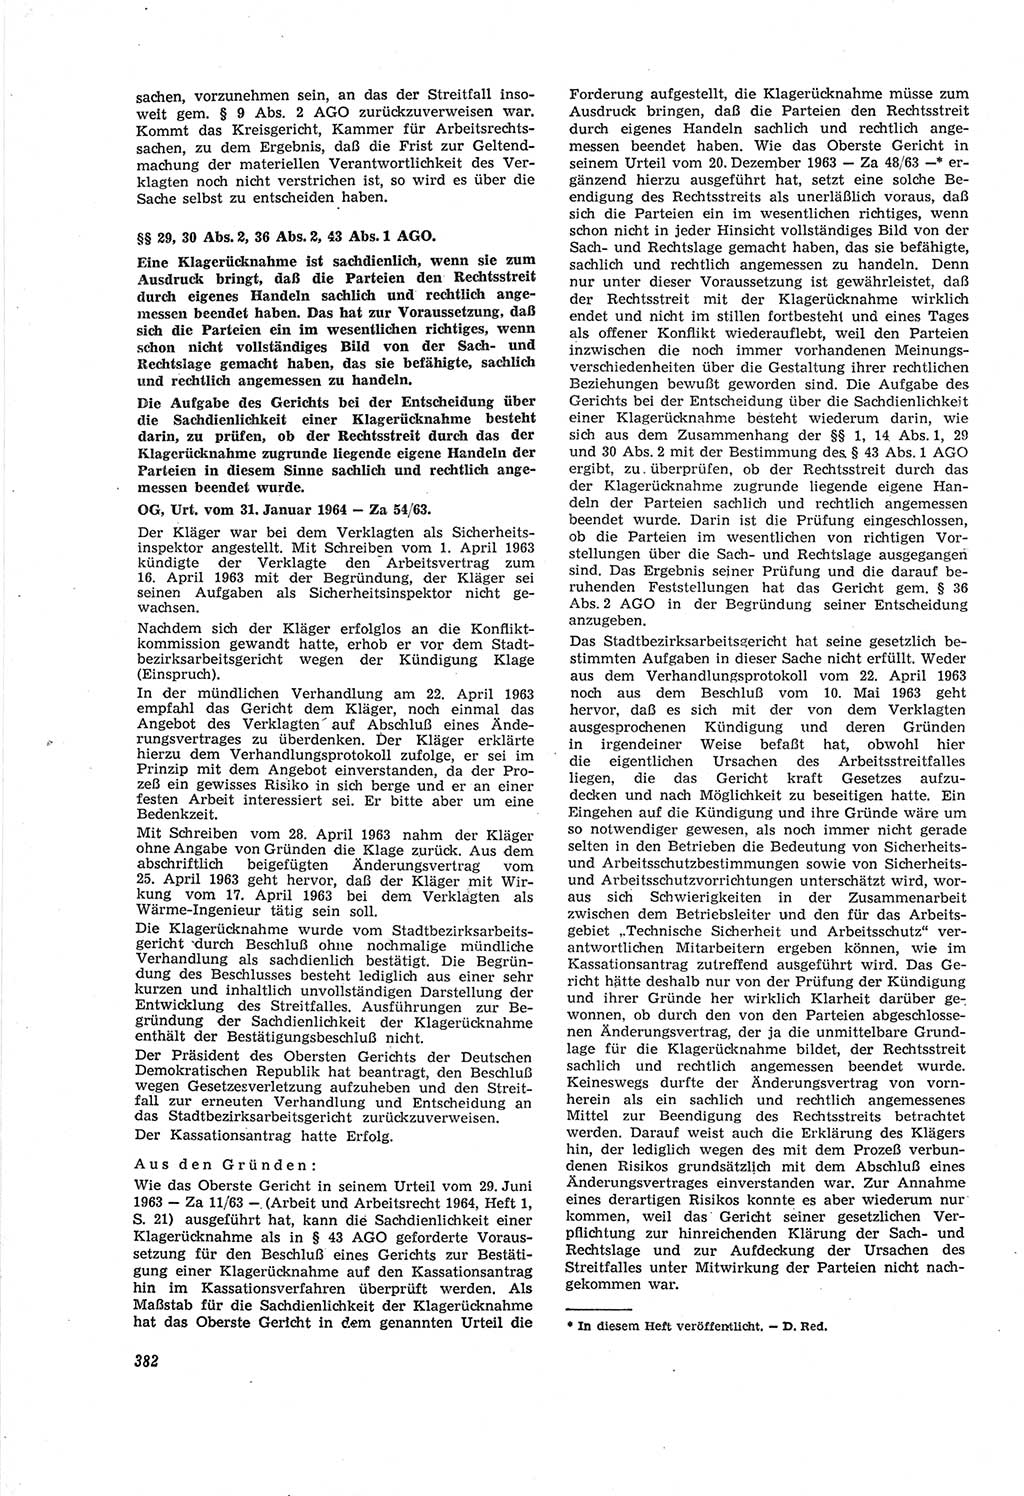 Neue Justiz (NJ), Zeitschrift für Recht und Rechtswissenschaft [Deutsche Demokratische Republik (DDR)], 18. Jahrgang 1964, Seite 382 (NJ DDR 1964, S. 382)